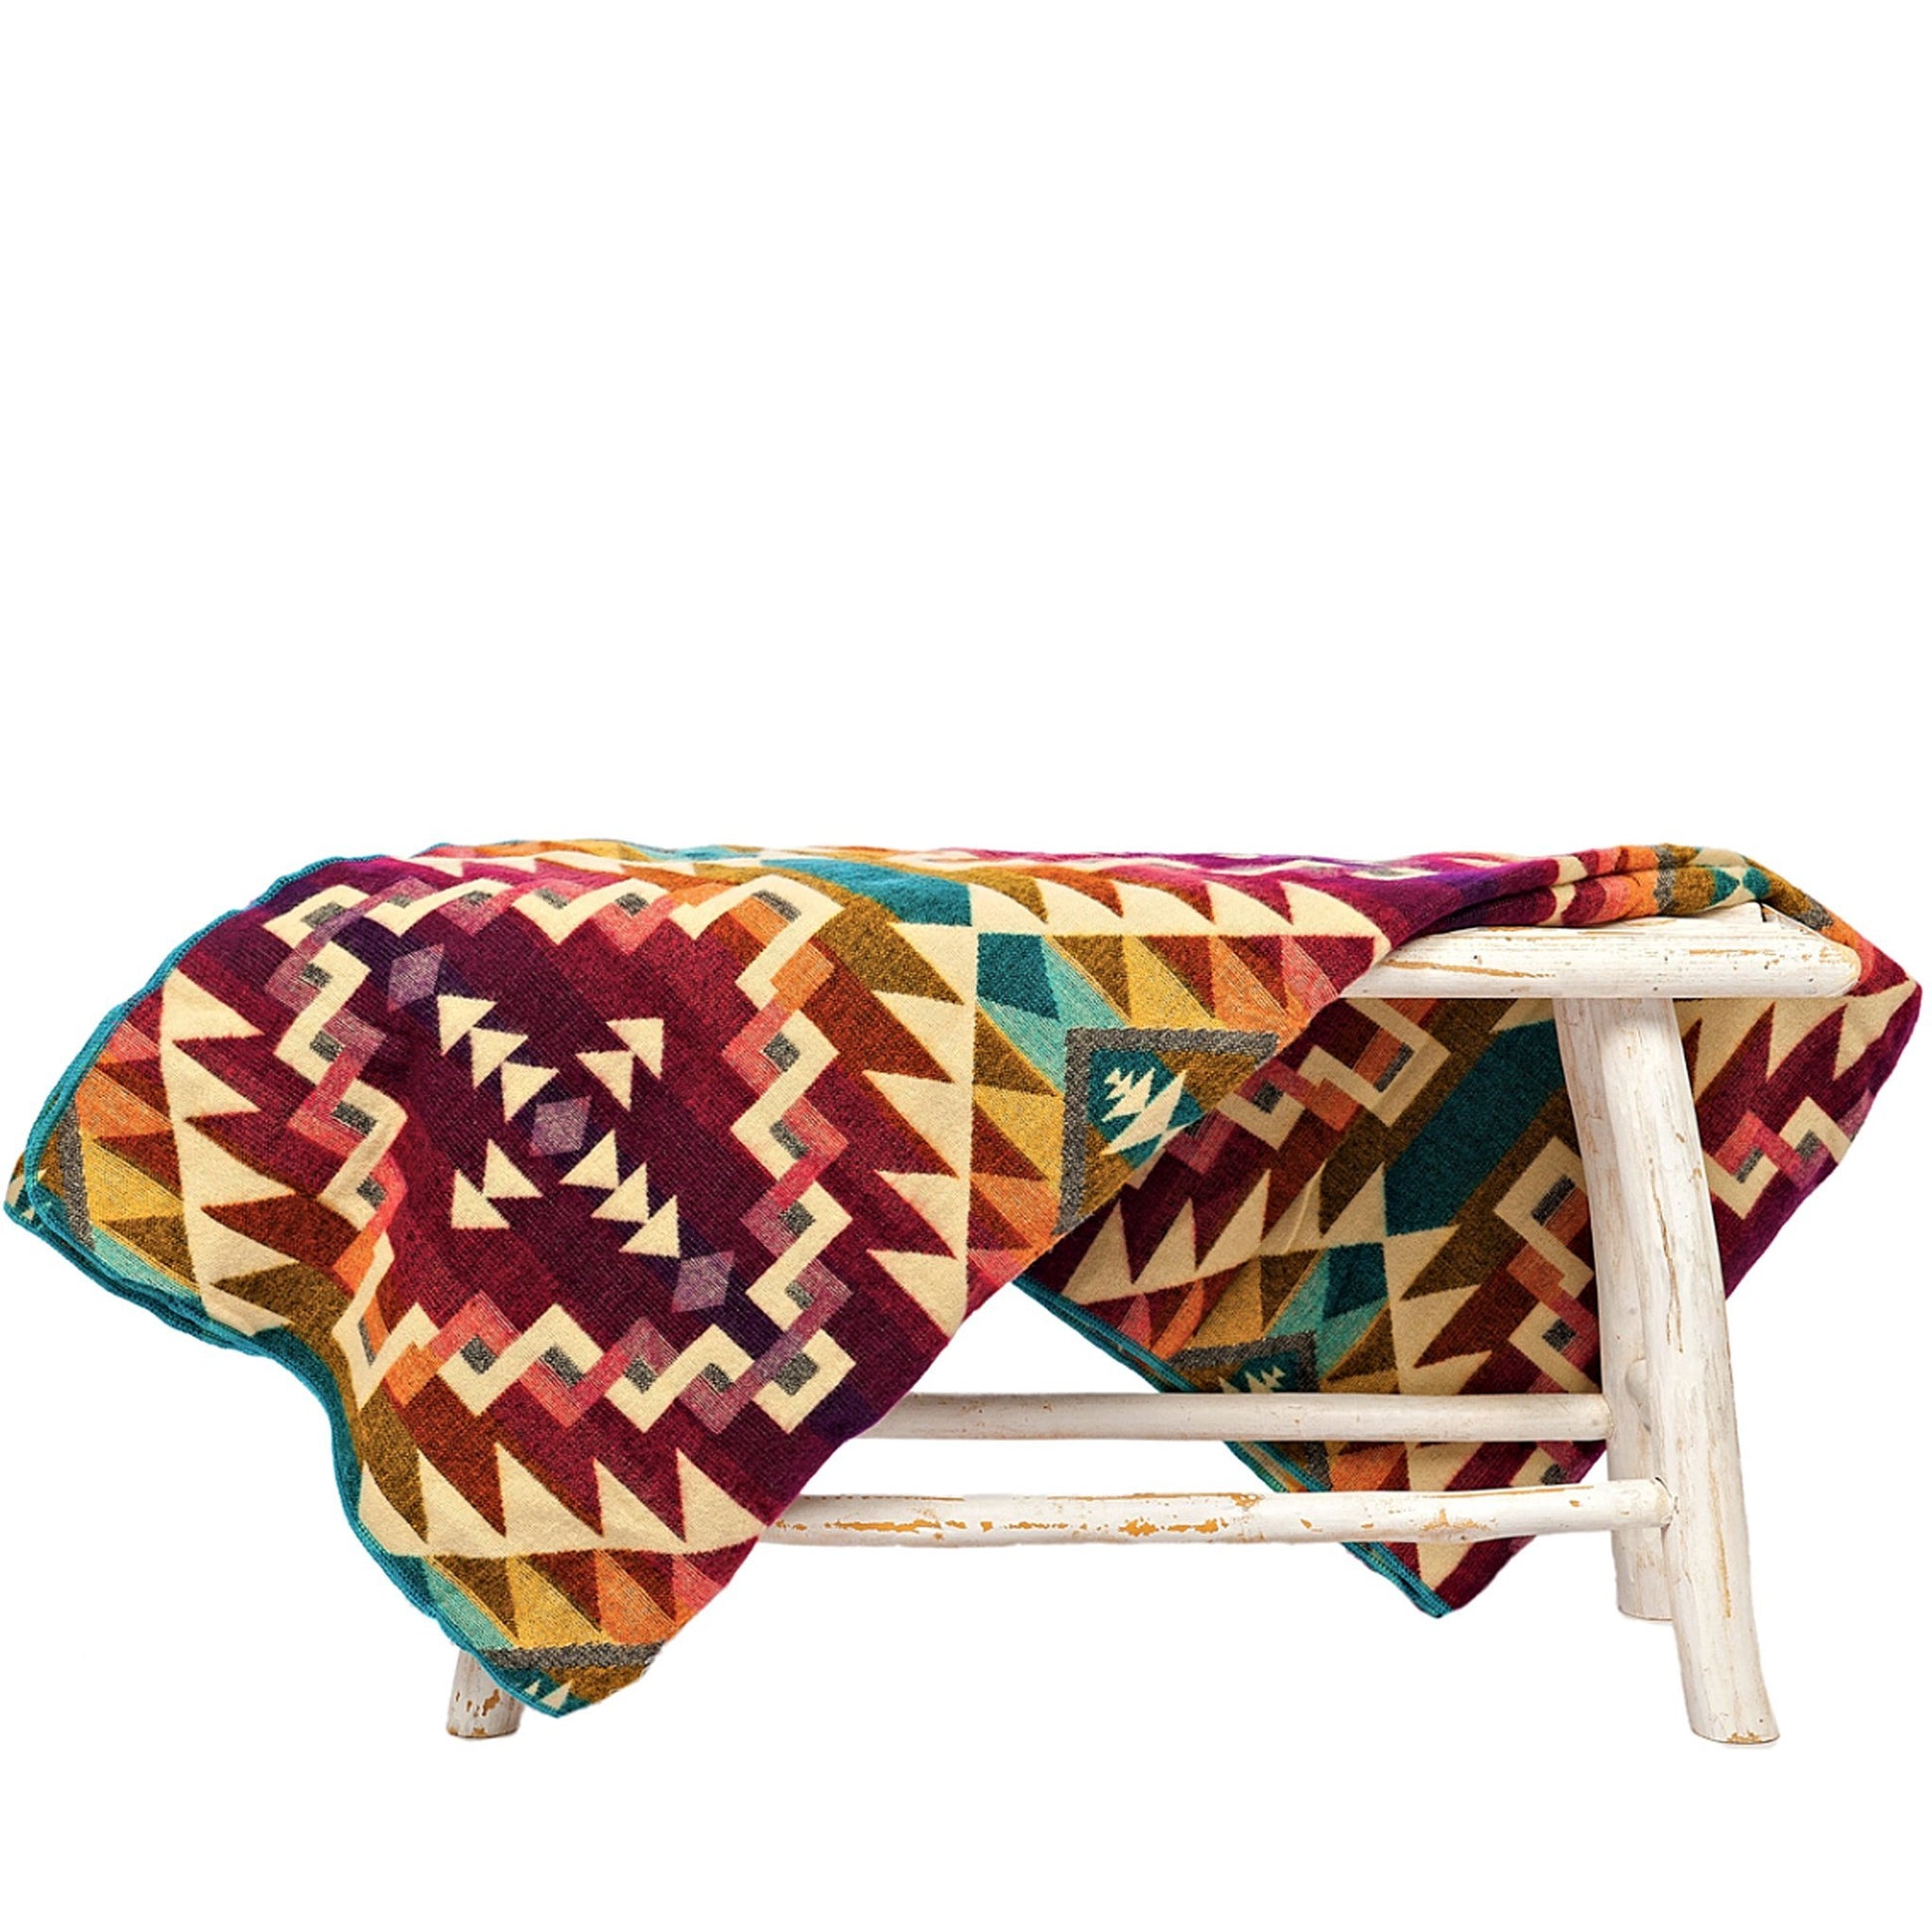 Authentische Chimborazo Decke aus Alpaka Wolle - 195 x 235 cm - Warmer, bunter Mix - Vandeley